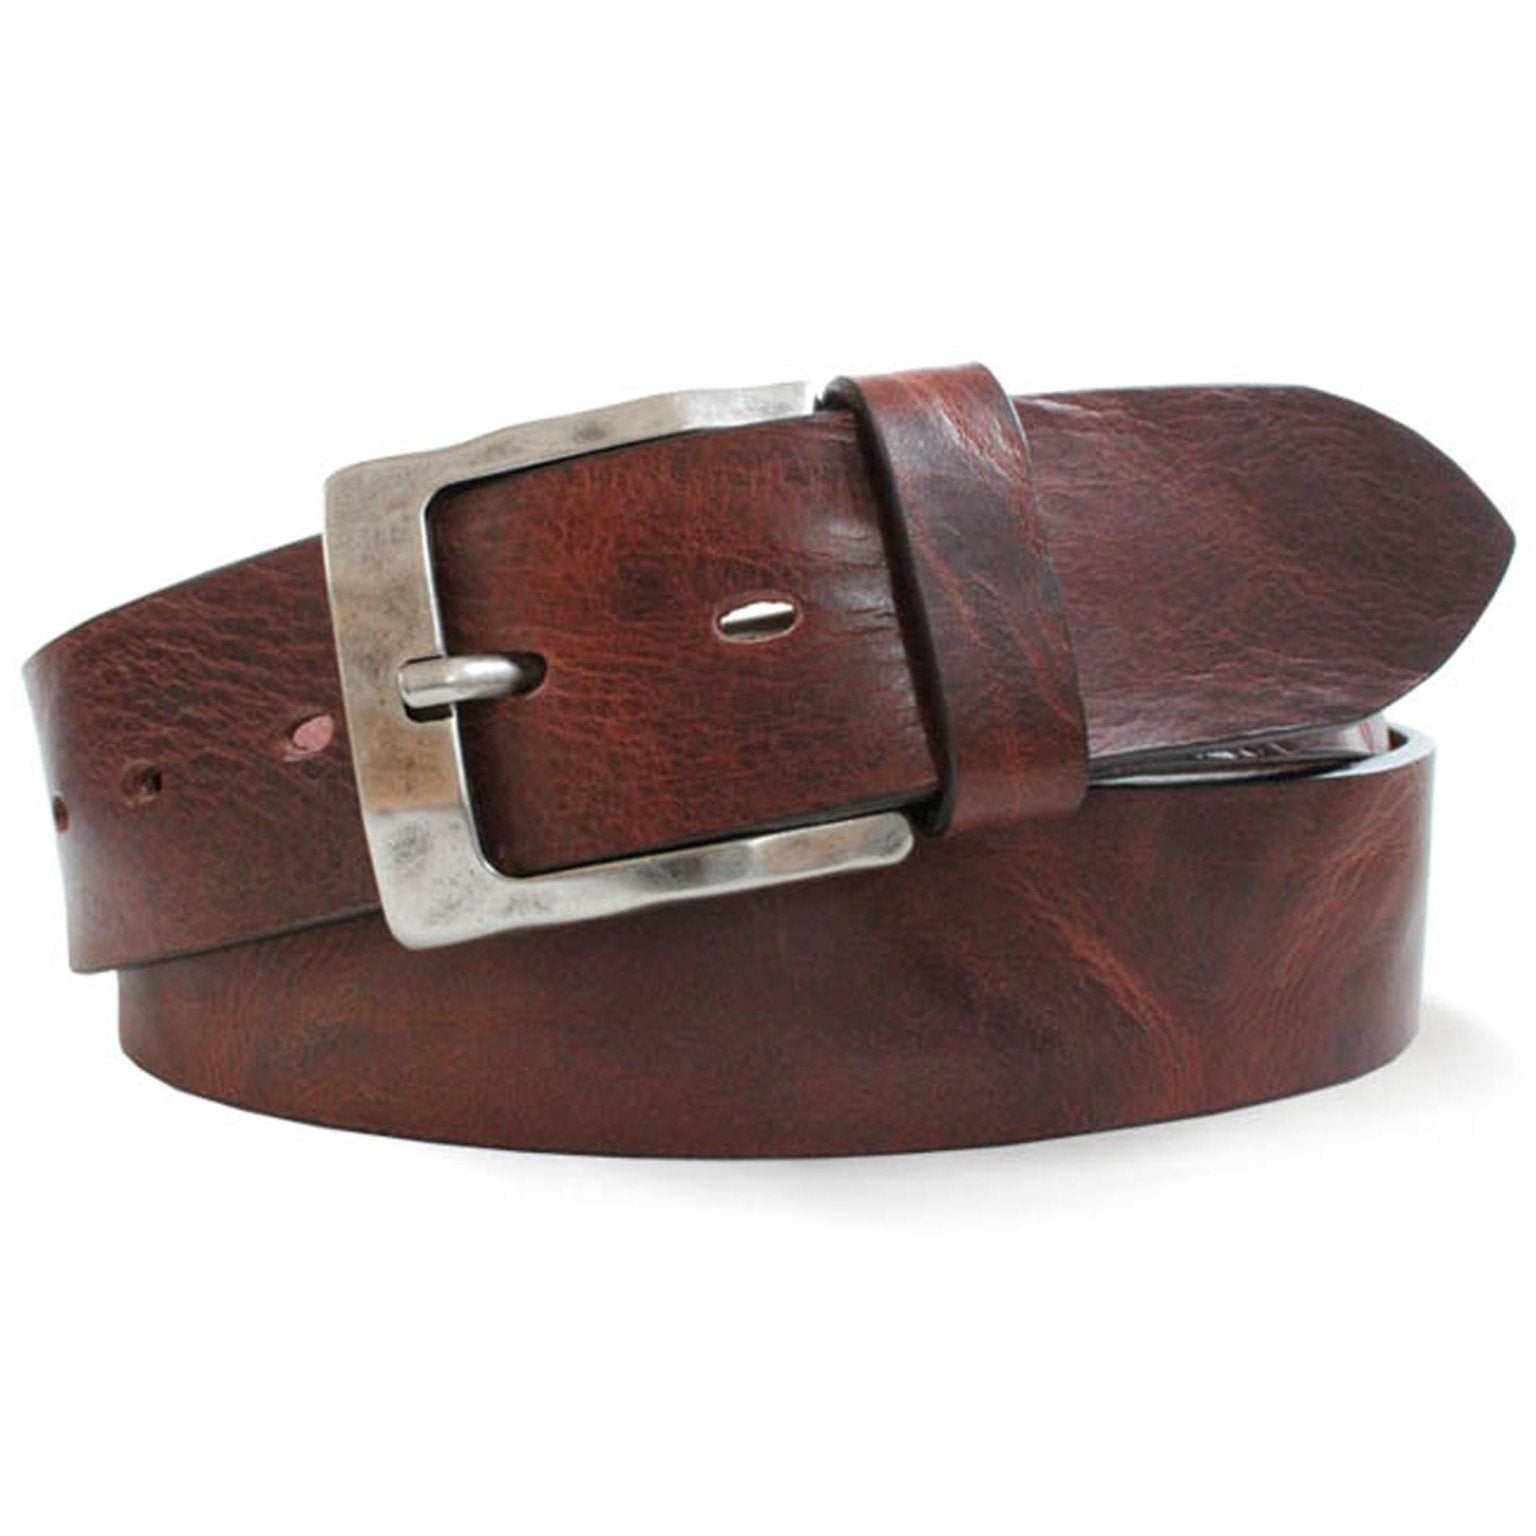 4elementsclothingRobert CharlesRobert Charles Belts - 6307 Burnished Mens Leather Belt - 40mm leather width - Made in ItalyBelts6307/BROWN/S